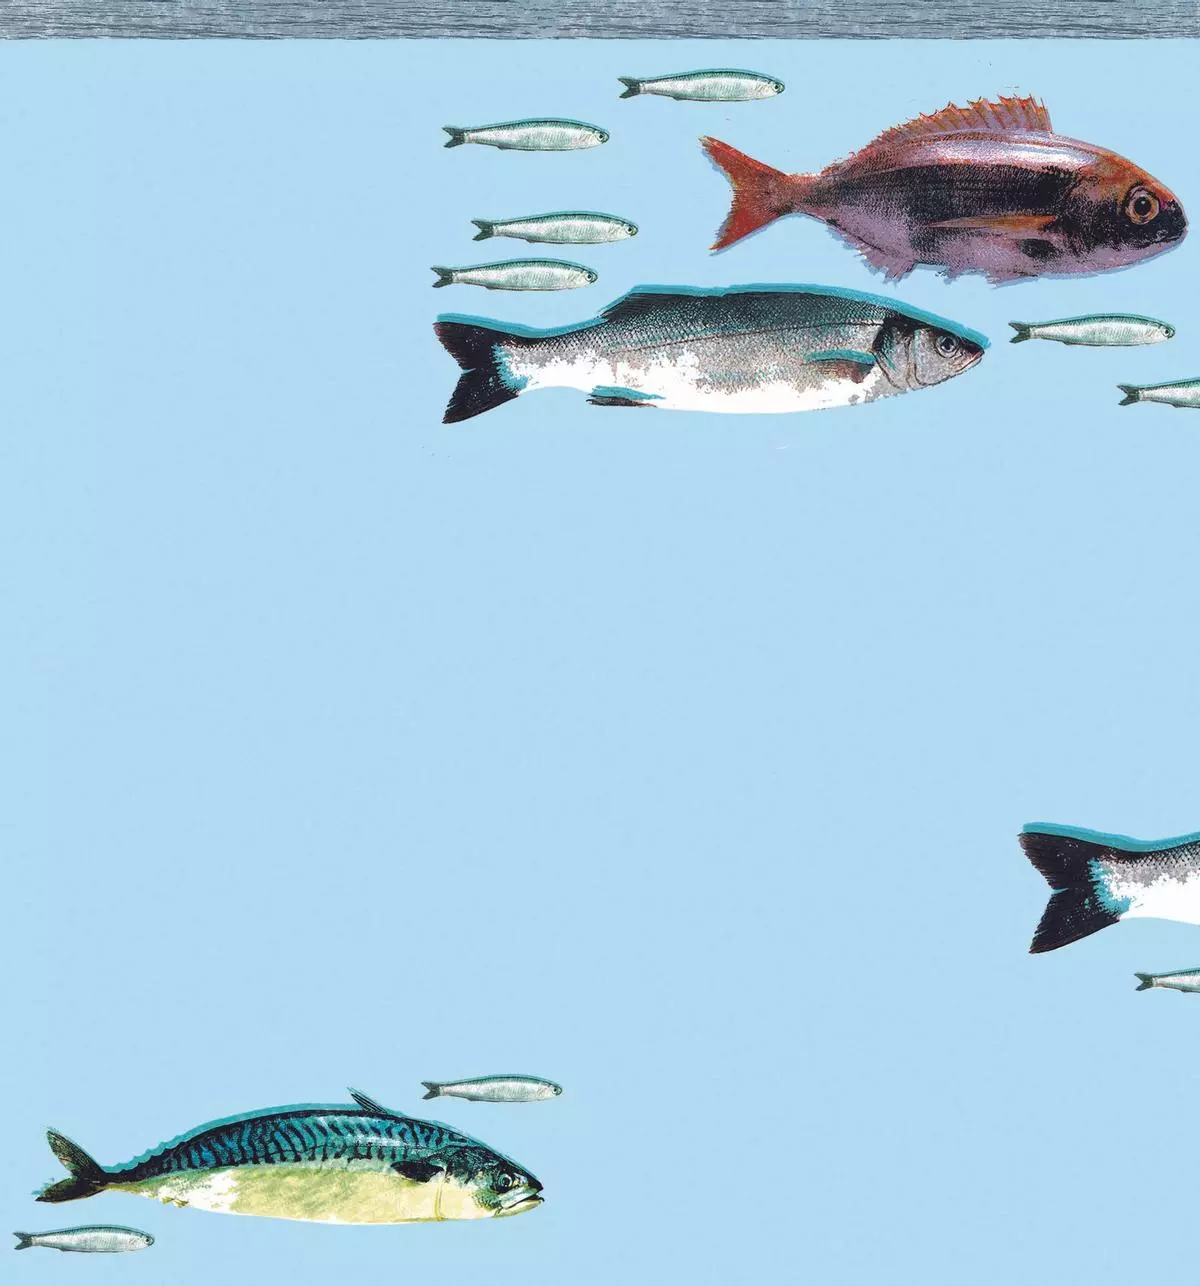 La humilde sardina, campeona en la liga de los pescados más saludables (y ricos)